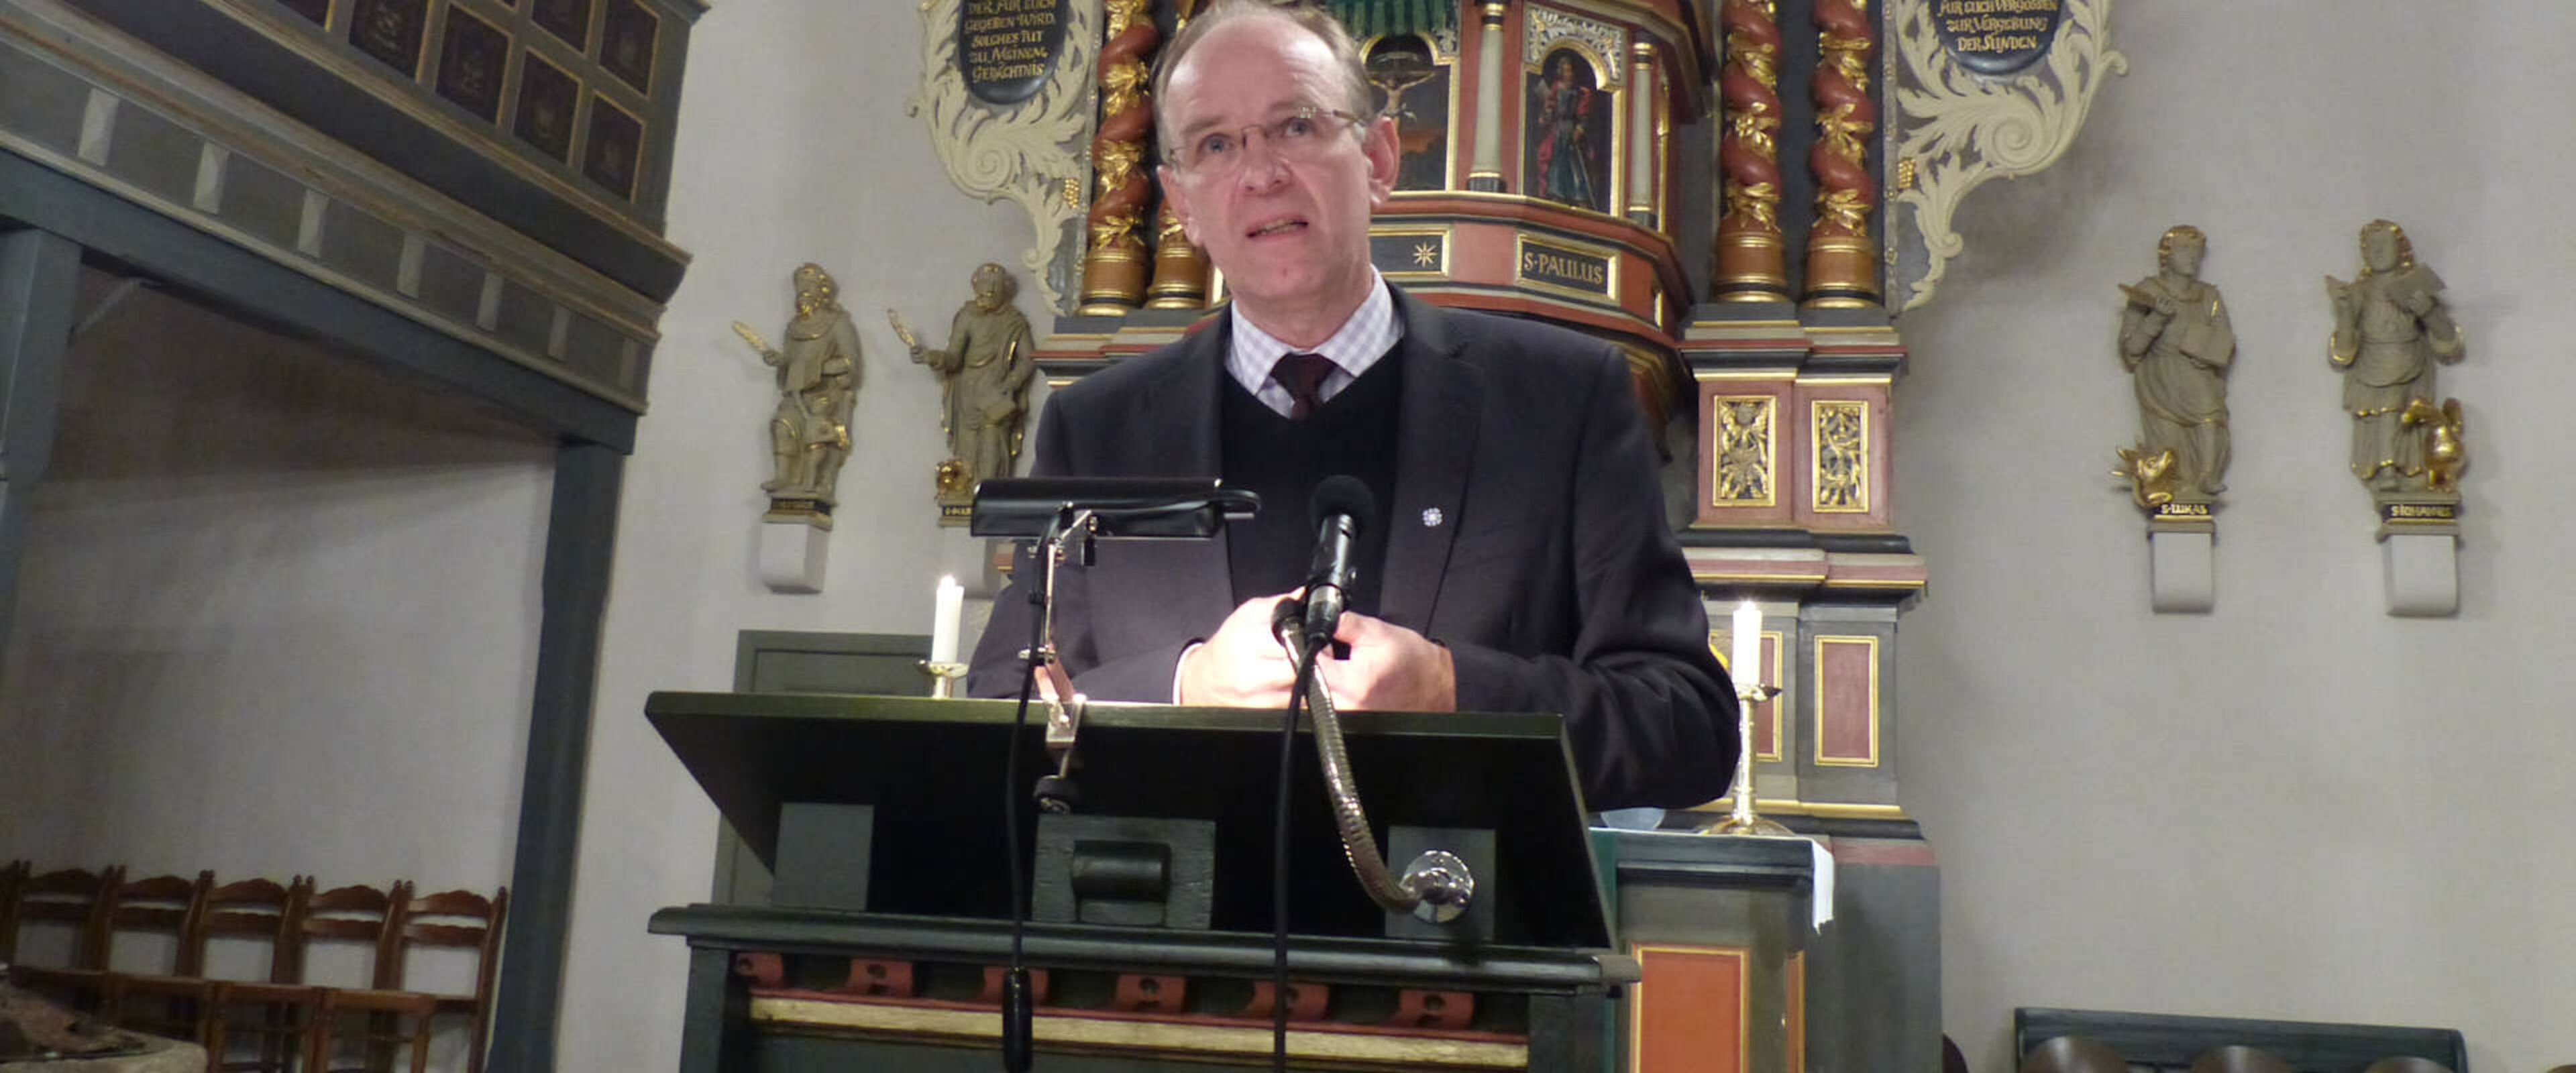 14.11.2013 Landesbischof Meister beim Loccumer Kreis - (C) Prof. Lottes